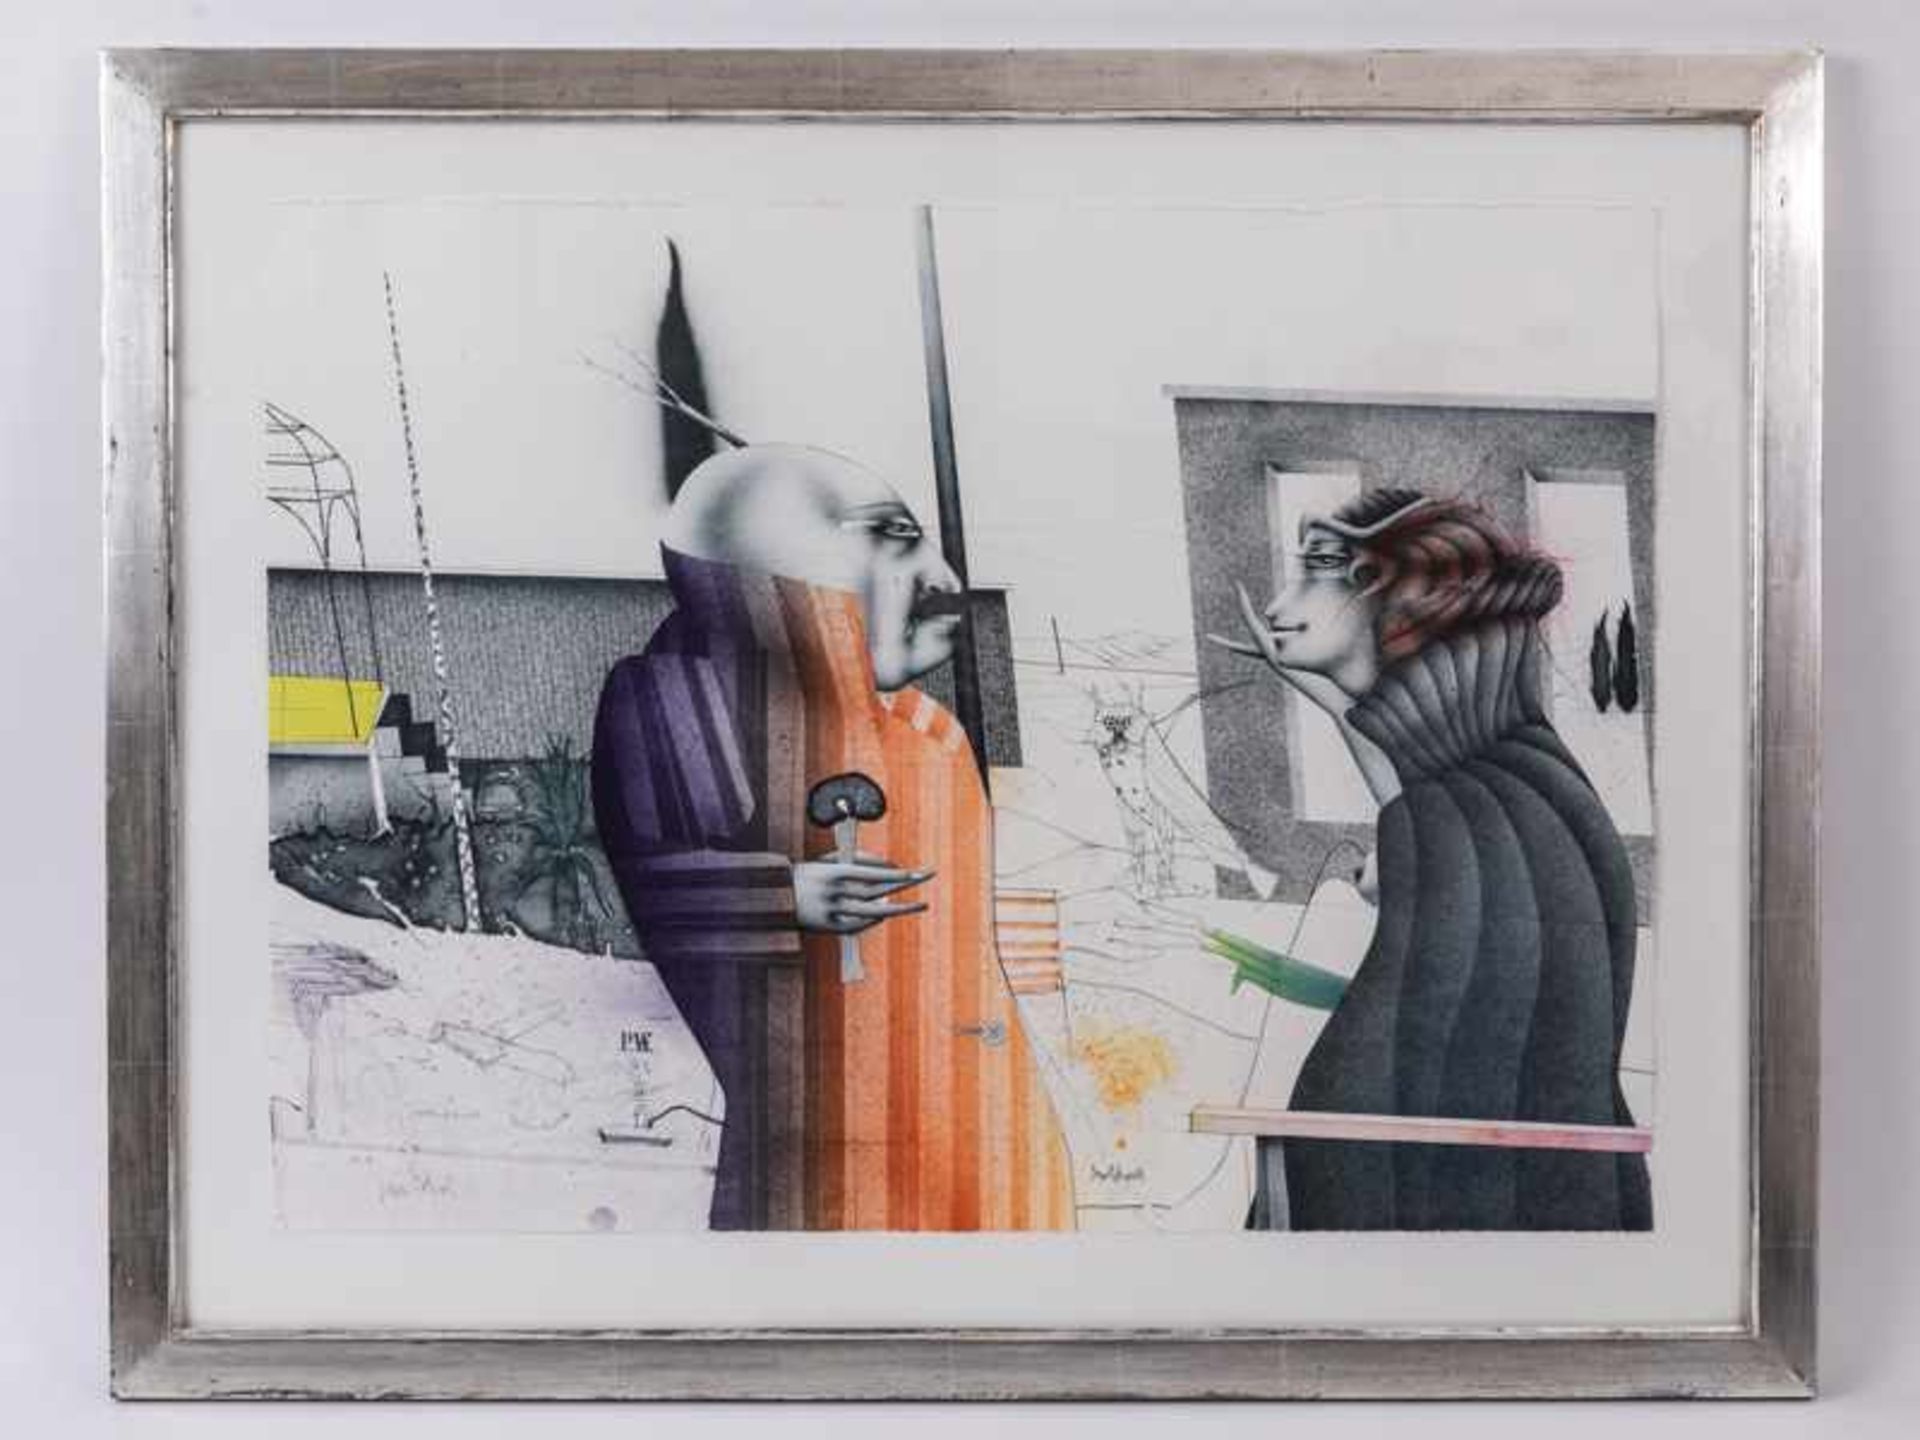 Wunderlich, Paul (1927 - 2010). Farblithographie. "Gartenzaun mit drei Zypressen", surrealistische